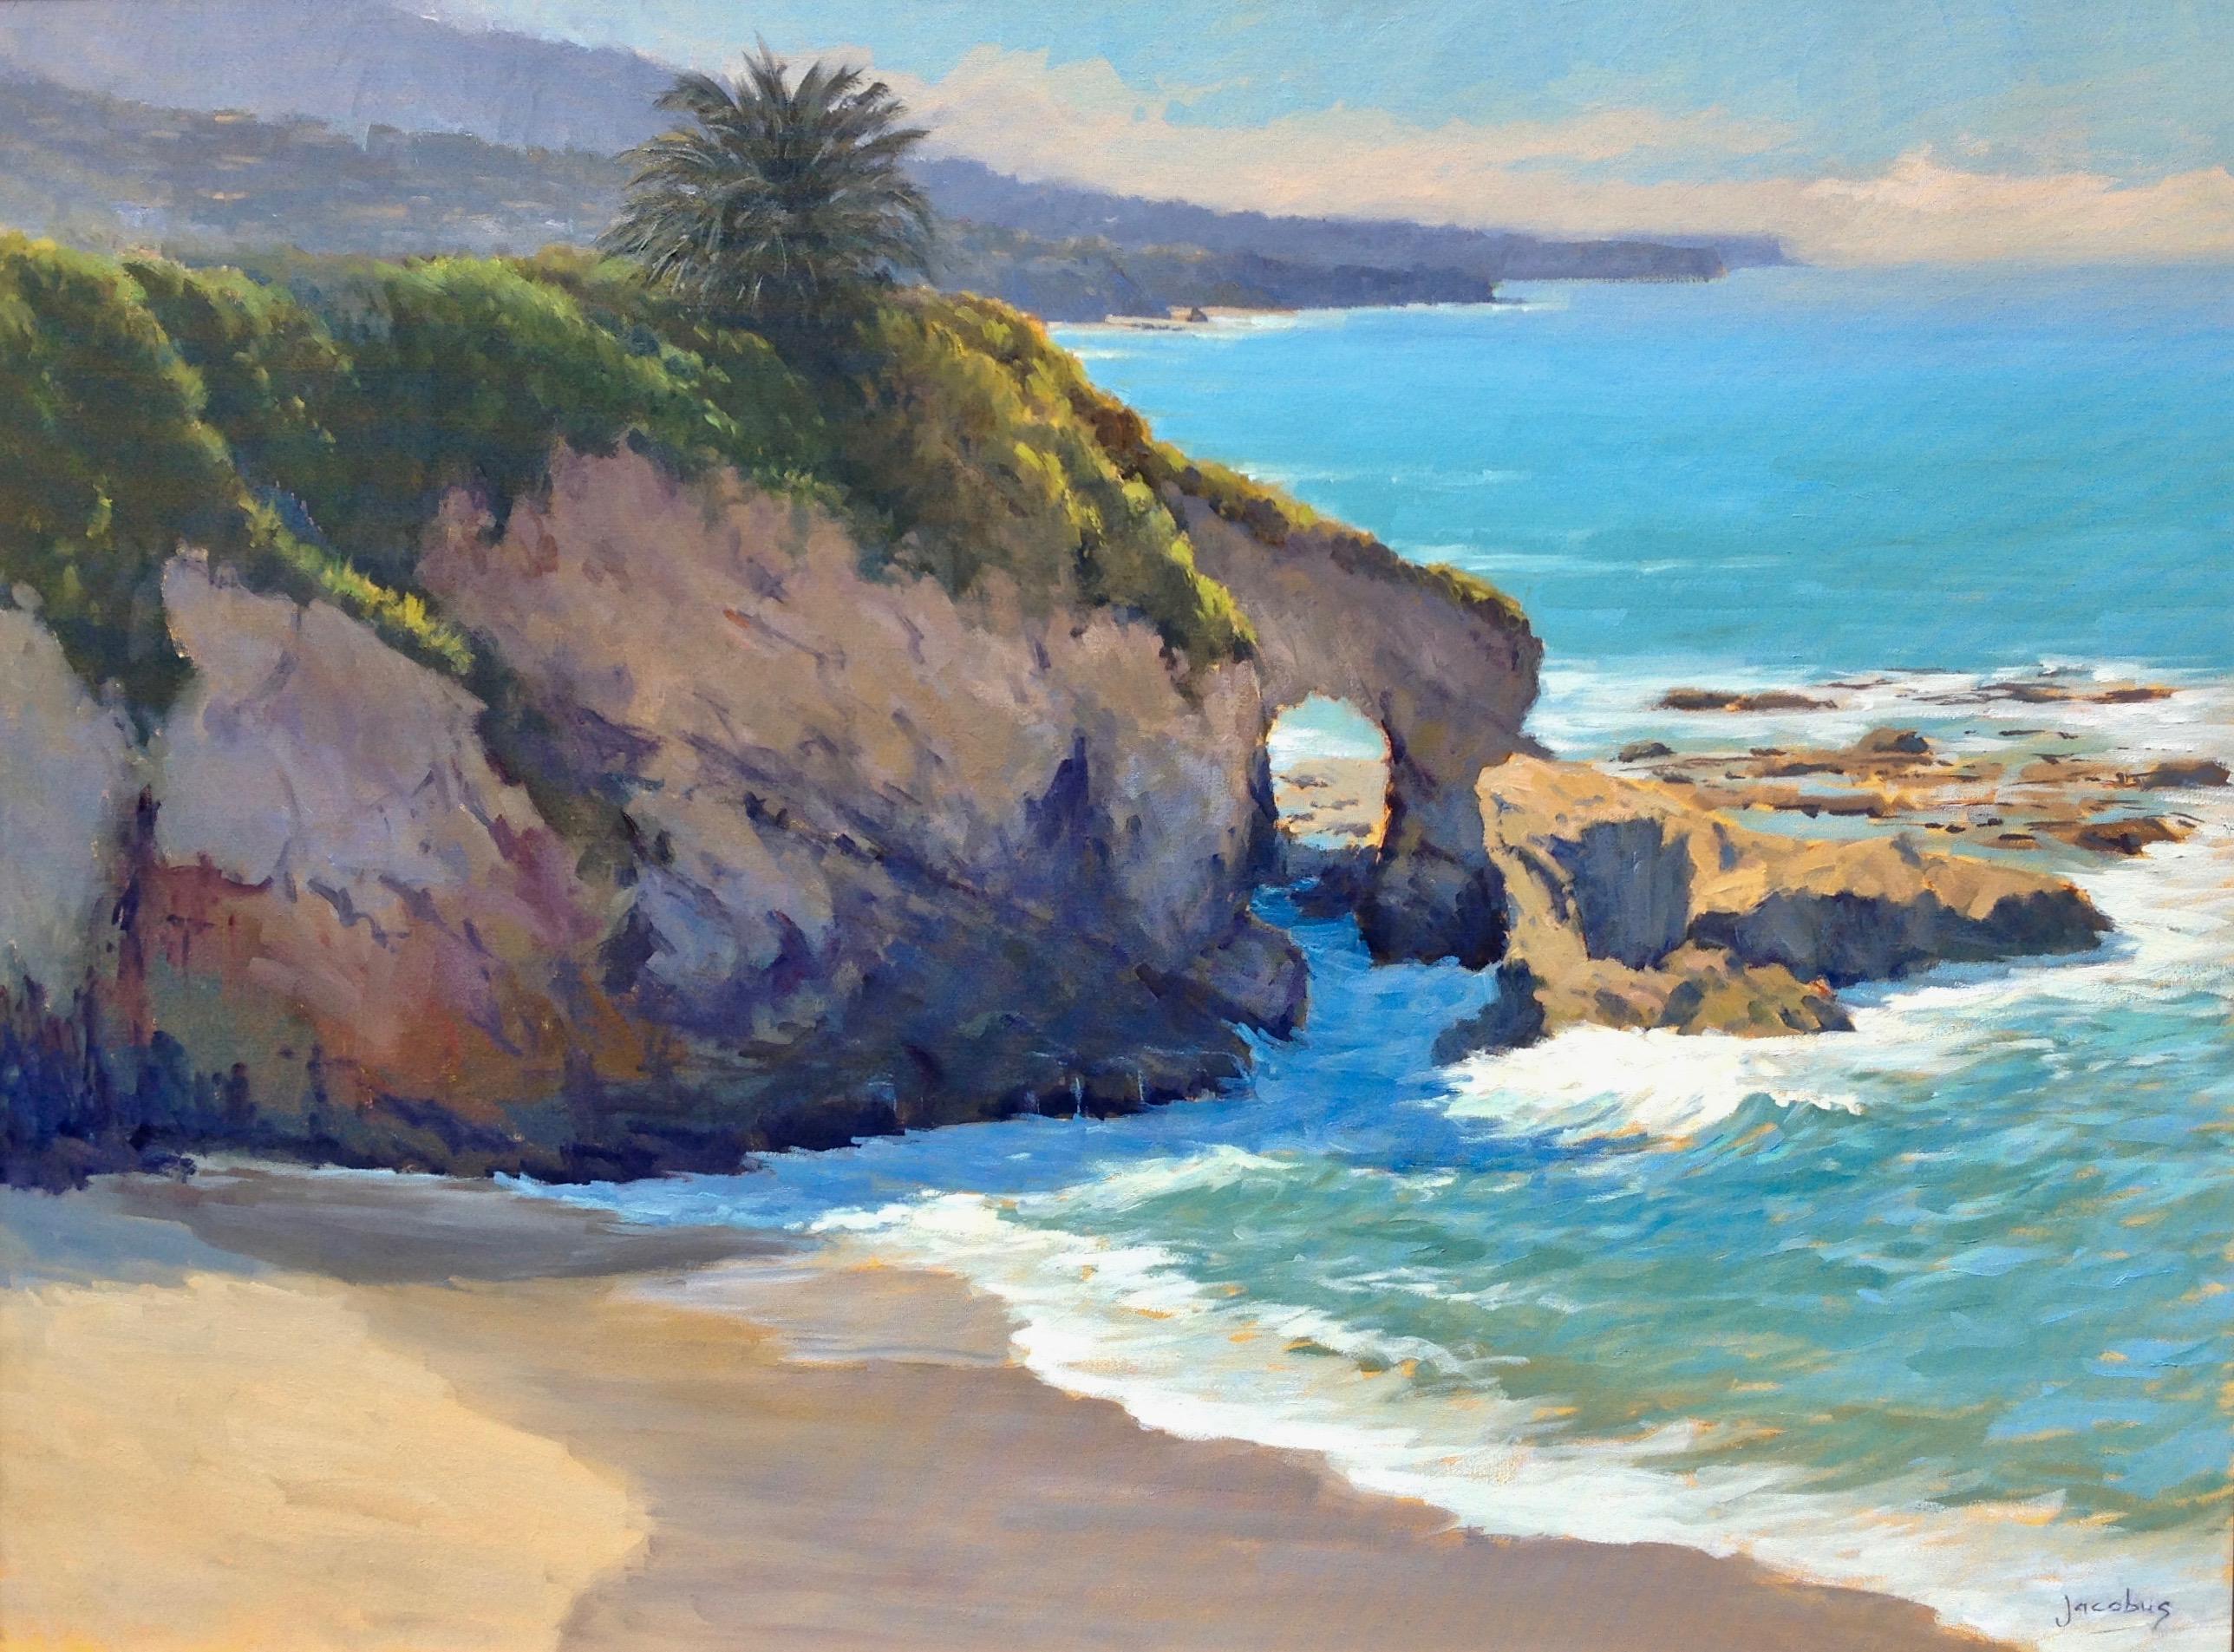 Jacobus Baas Landscape Painting - "South Laguna Vista" Laguna Beach California Seascape Plein Air Painting